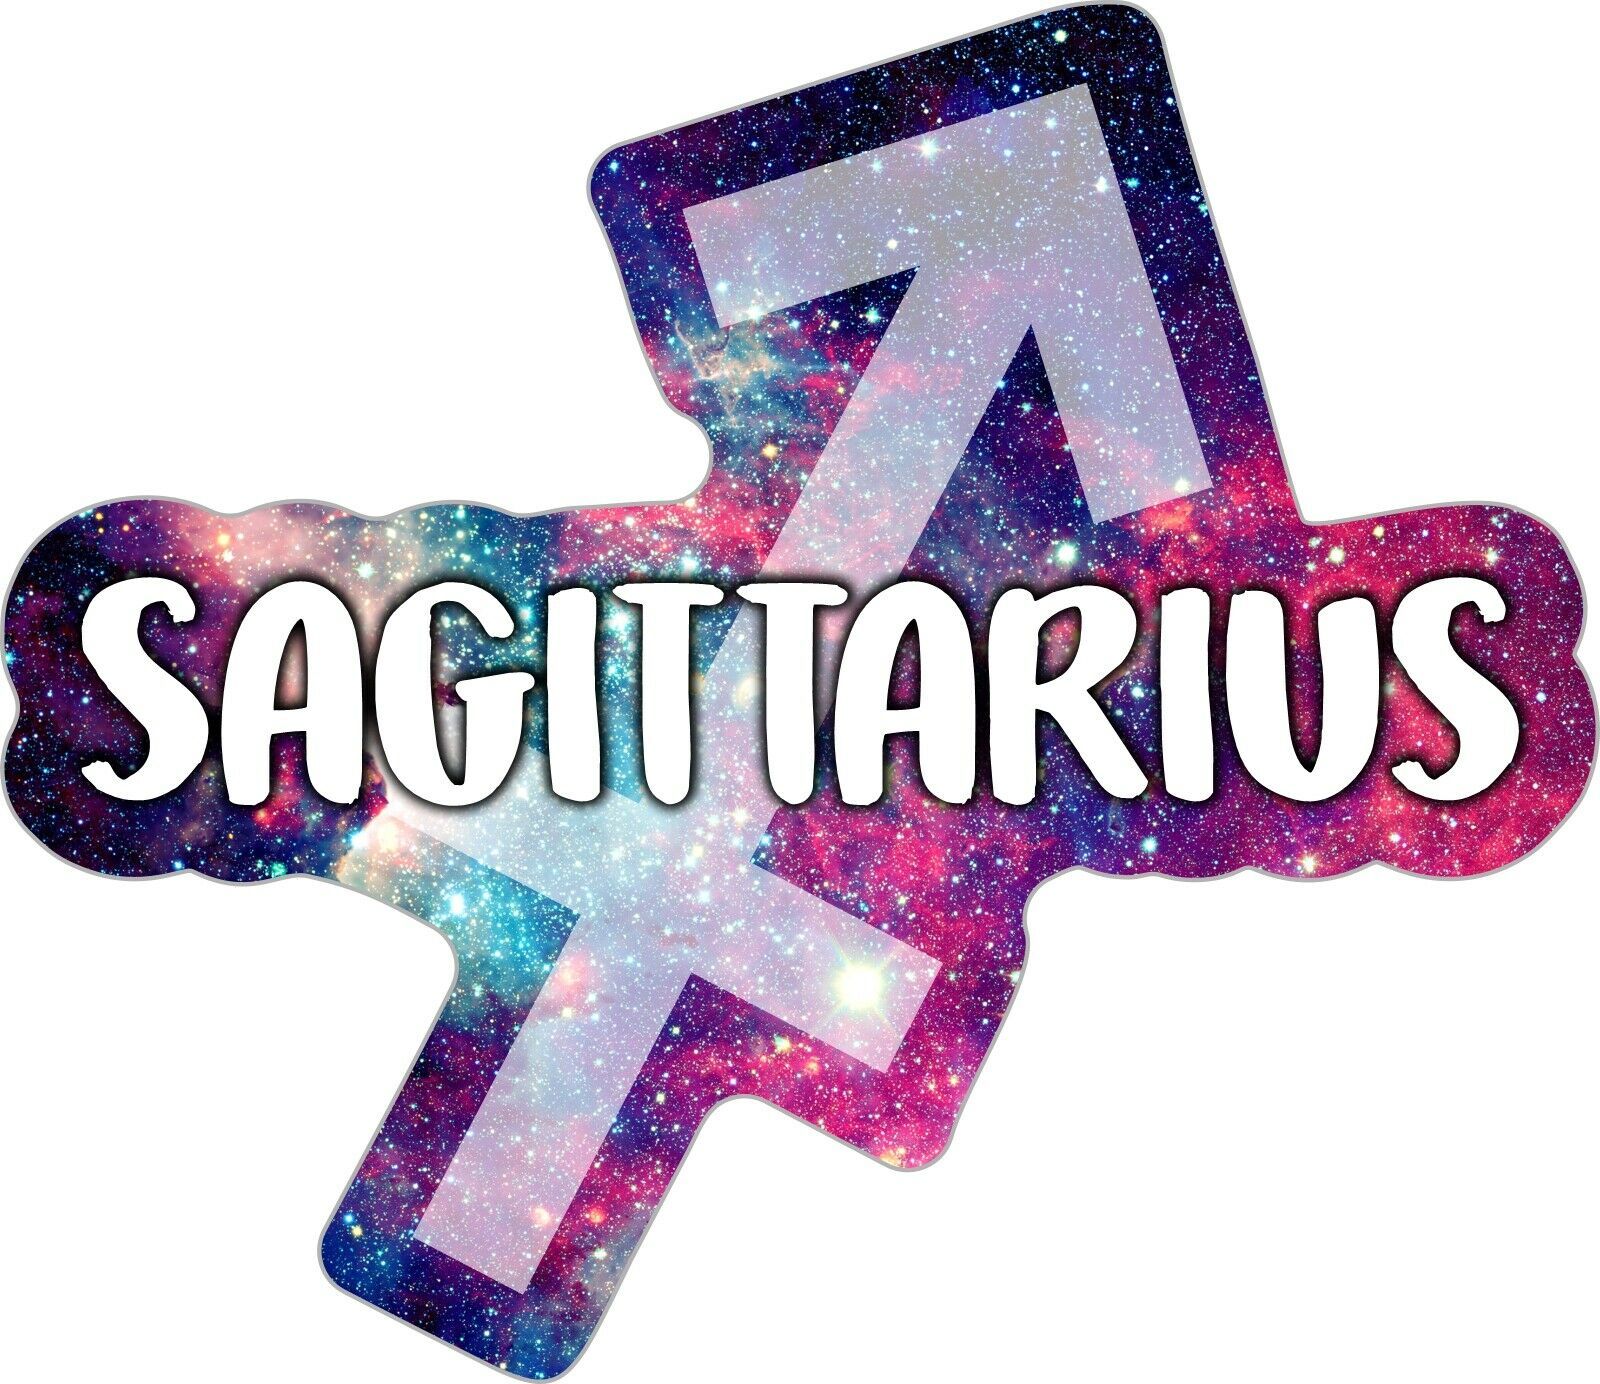 Primary image for Sagittarius Fridge Magnet